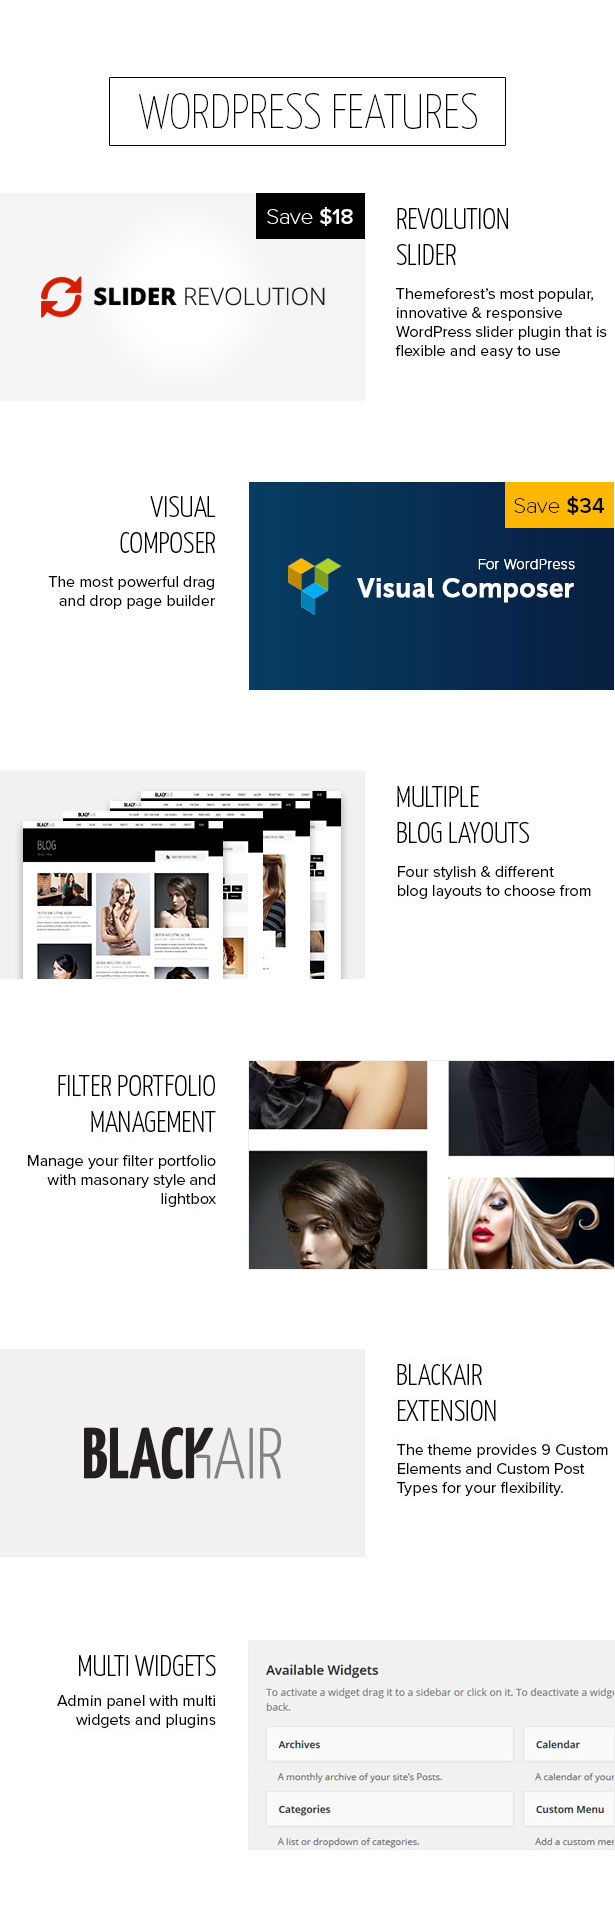 Blackair - One Page WordPress Theme for Hair & Beauty Salon - 9